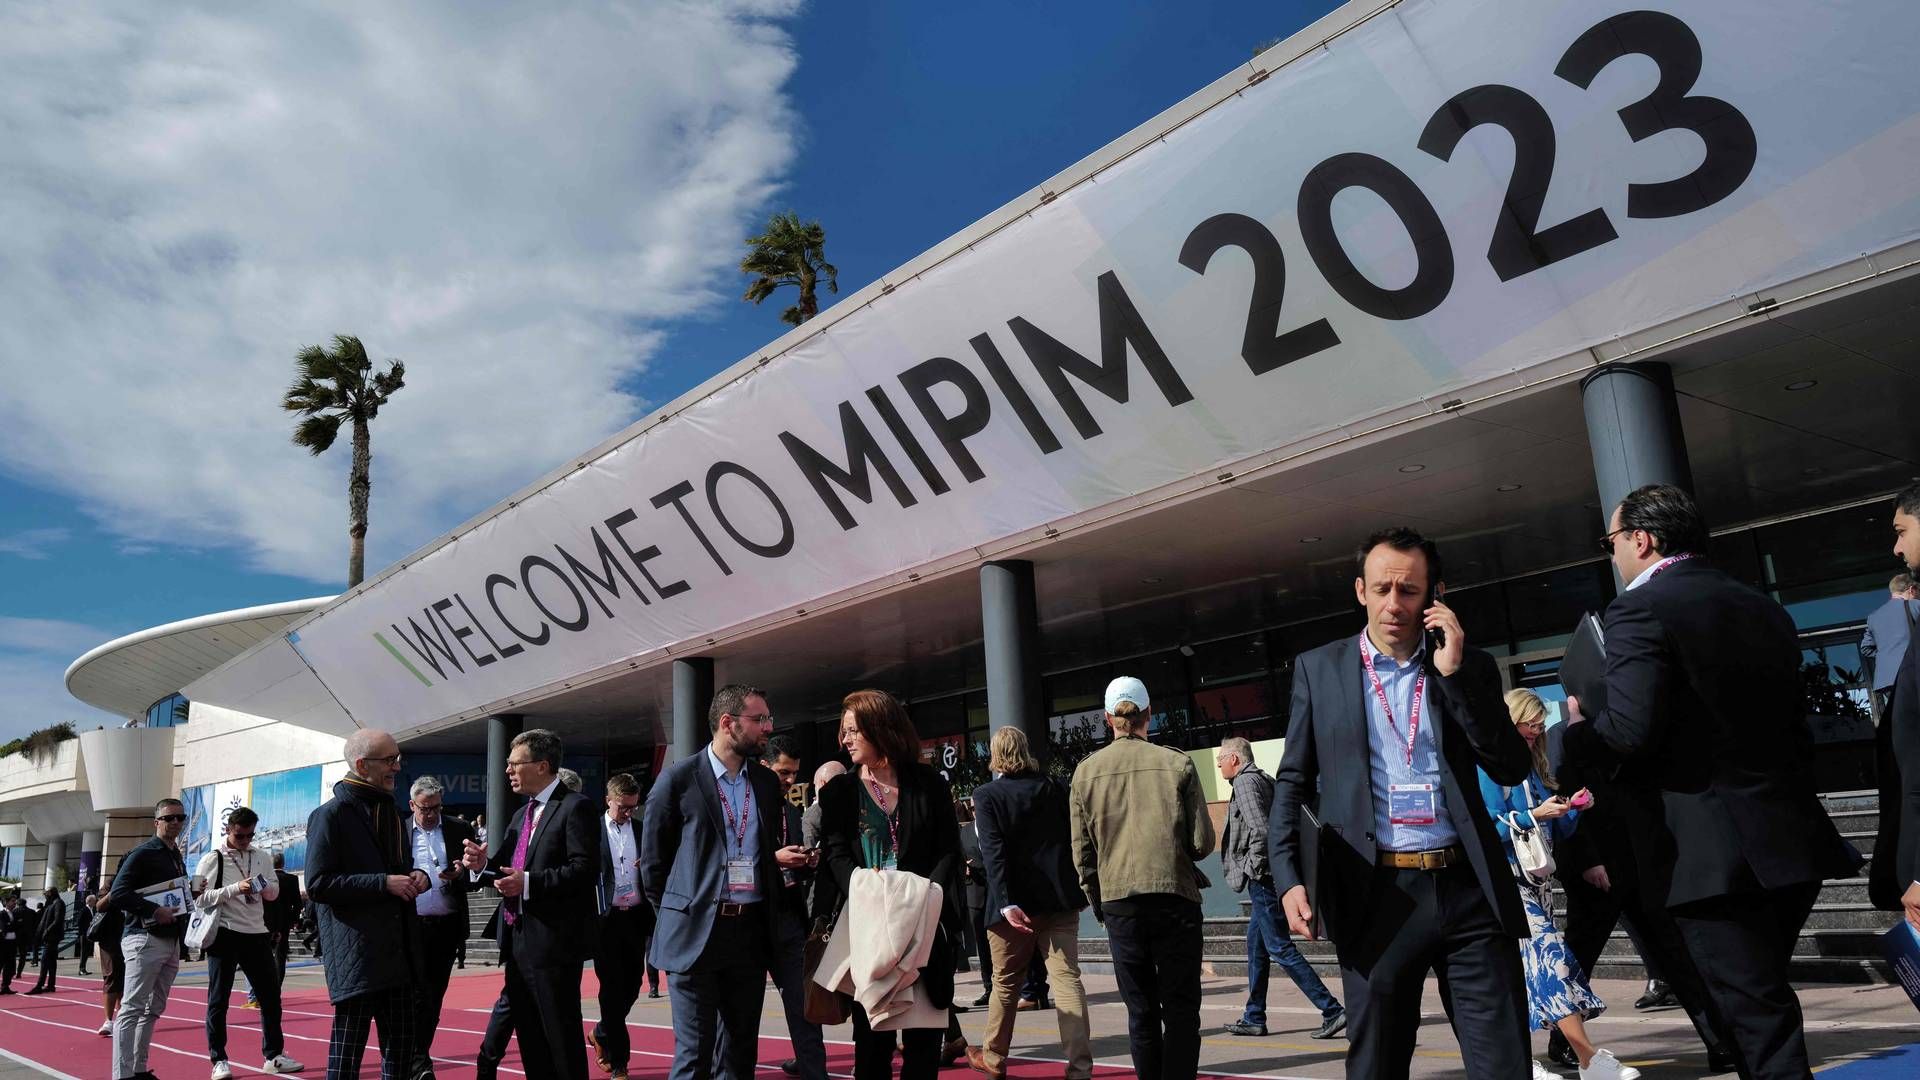 Mipim er verdens største ejendomsmesse og samlingspunkt for blandt andre investorer, projektudviklere, advokater og erhvervsmæglere. | Foto: Valery Hache